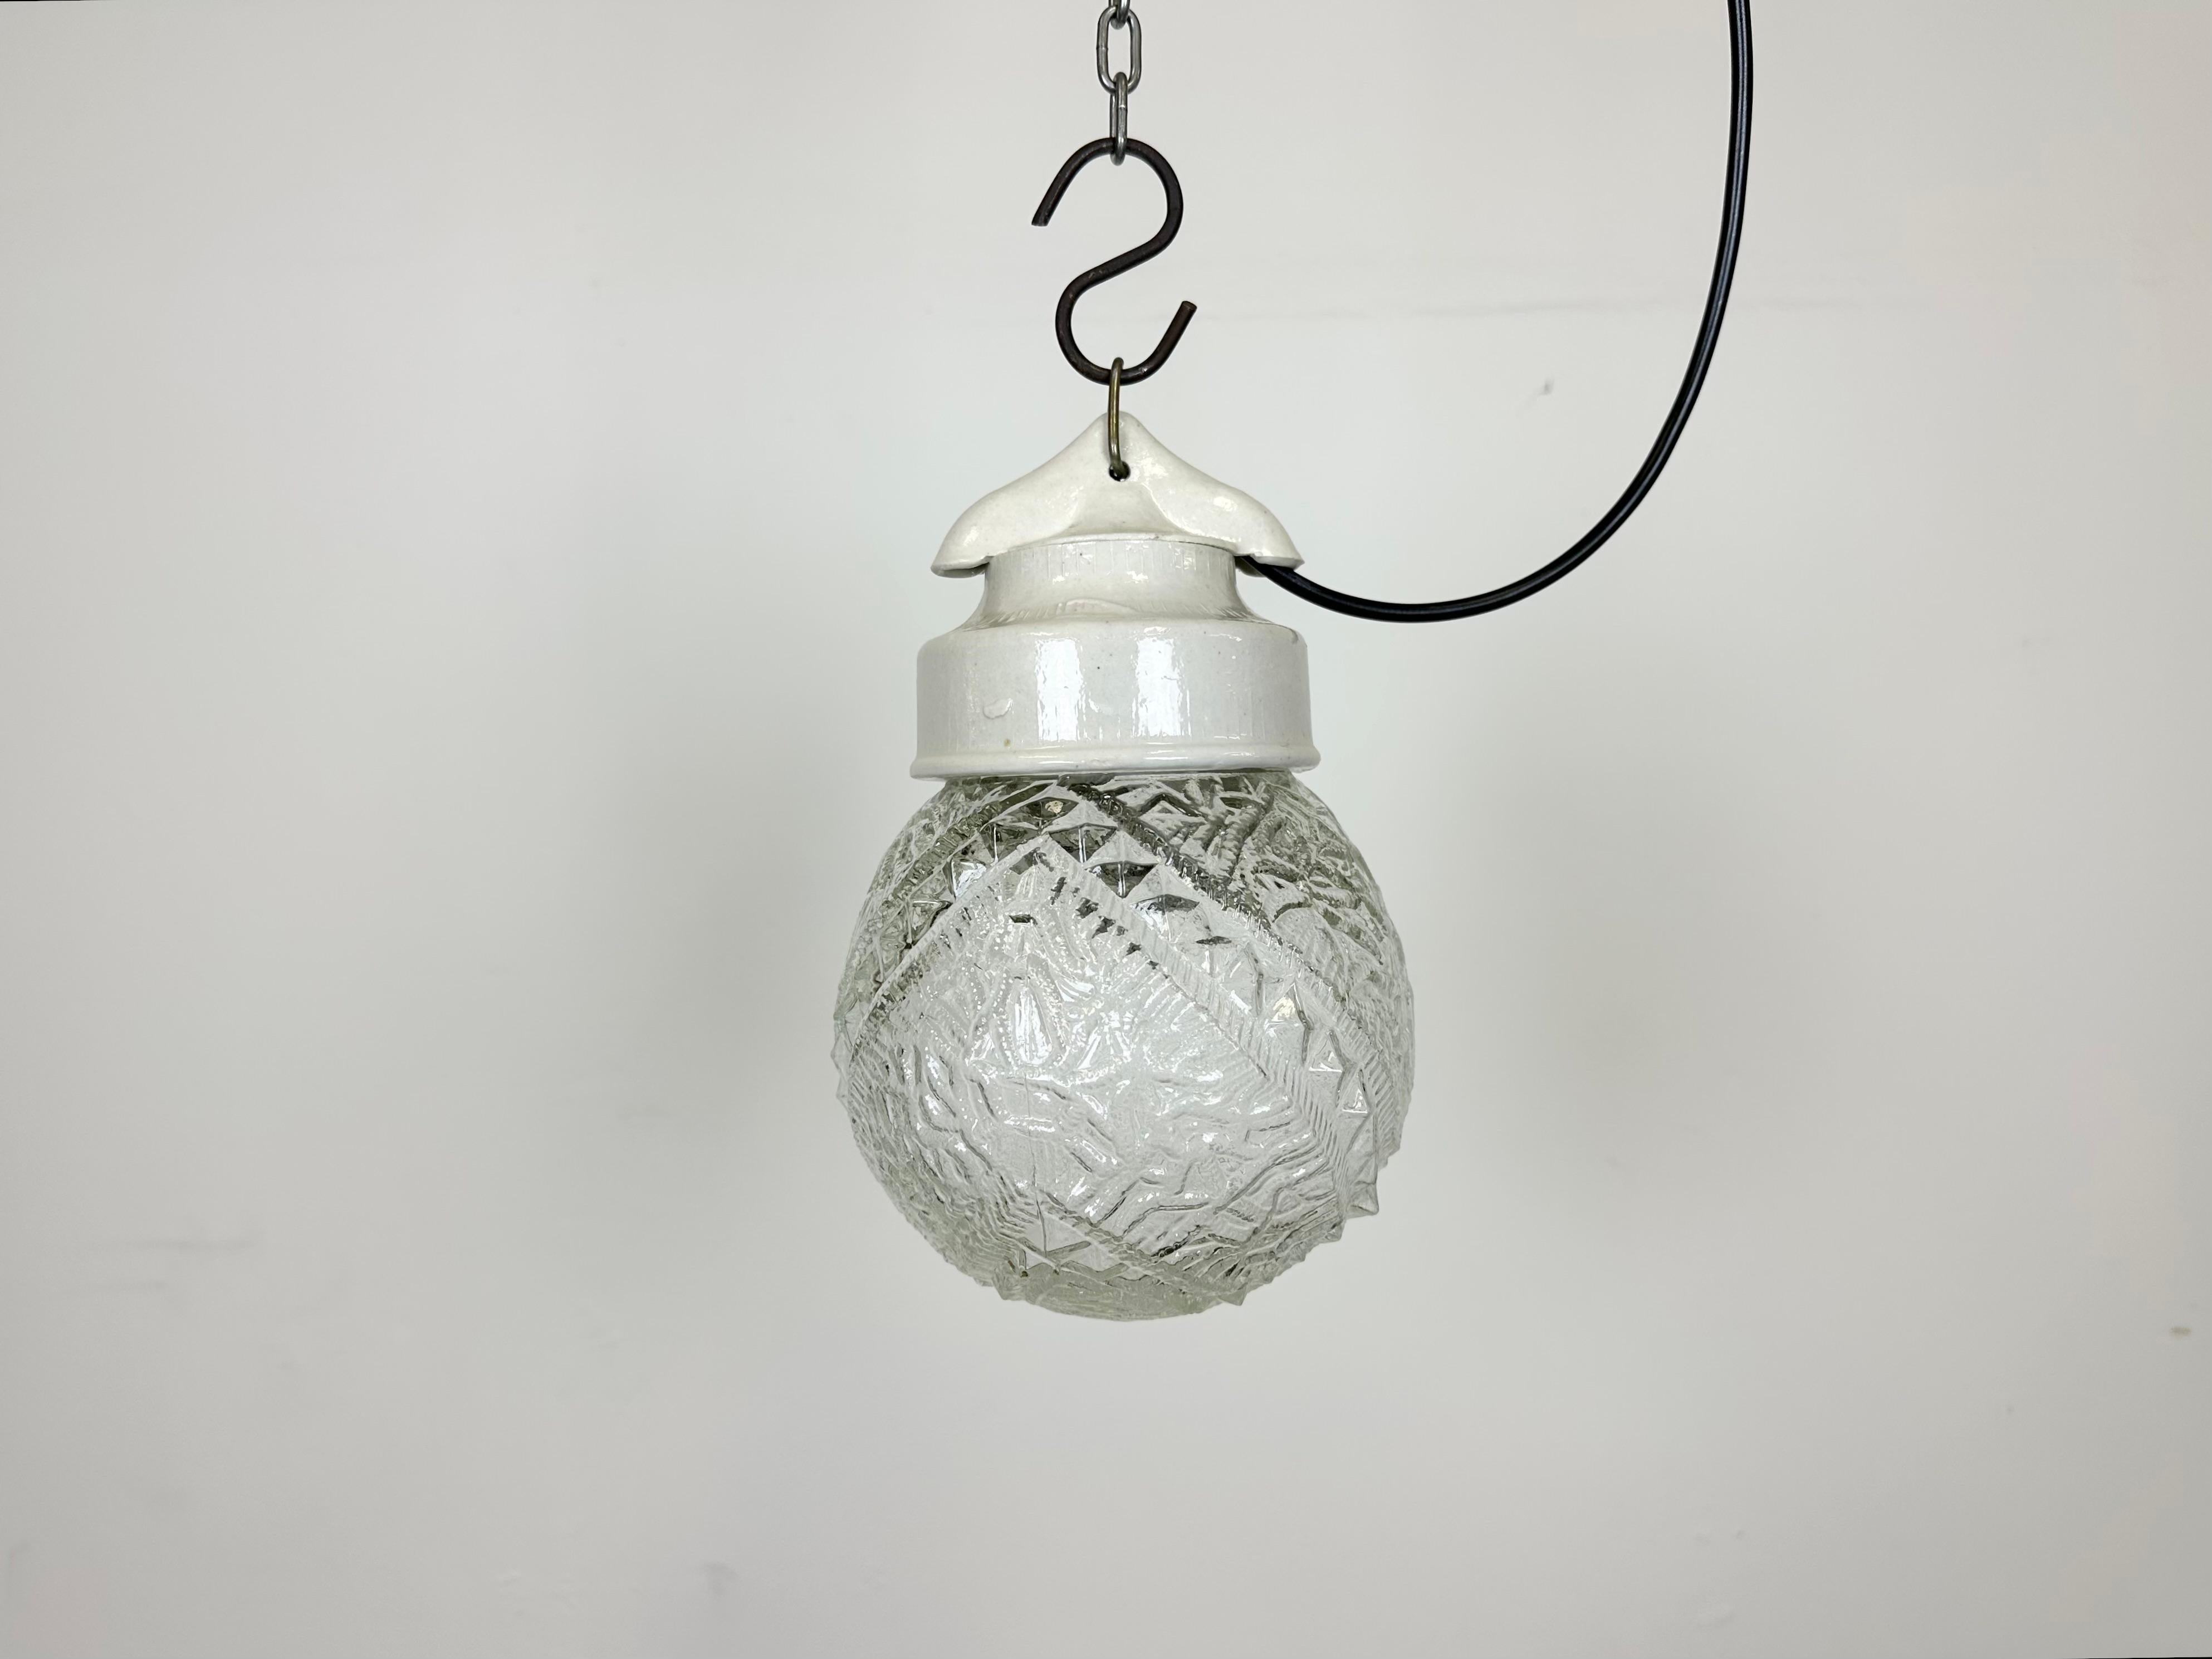 Lampe industrielle vintage fabriquée en Pologne dans les années 1970, avec un plateau en porcelaine blanche et un couvercle en verre. La douille nécessite des ampoules E27/ E26. Un nouveau fil. Le poids de la lampe est de 1 kg.
Dimensions :
Diamètre